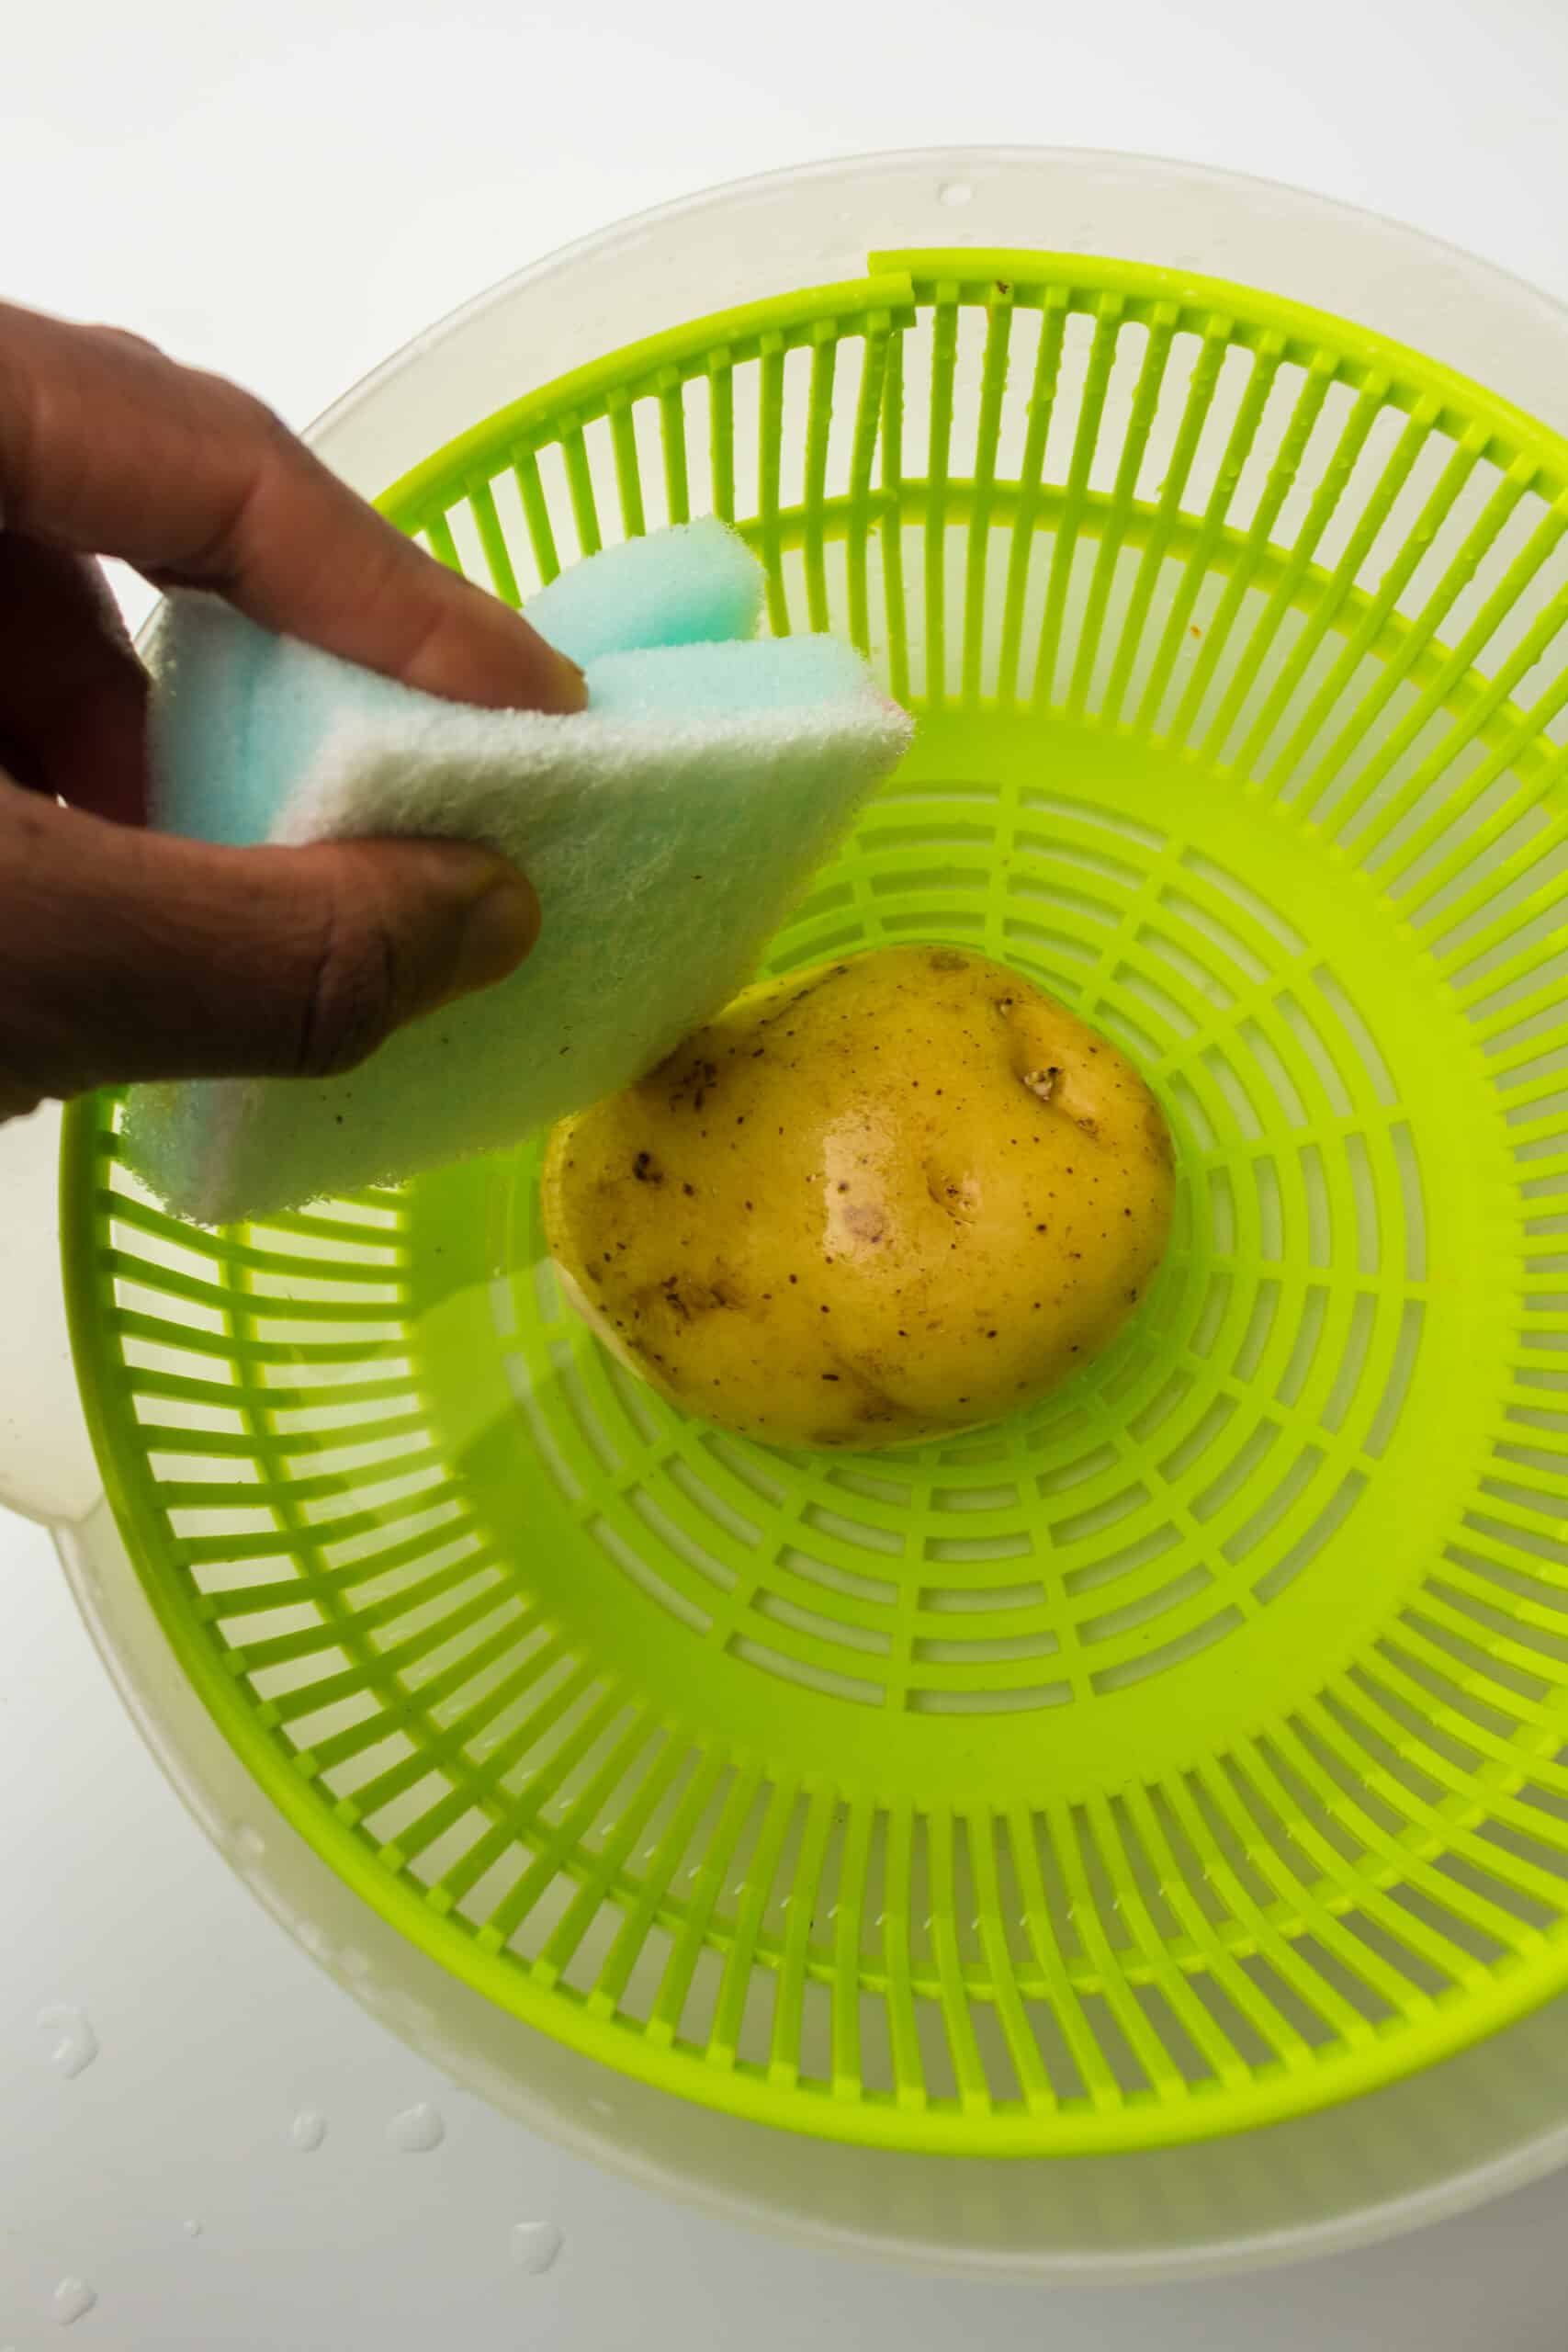 Scrubbing Potato